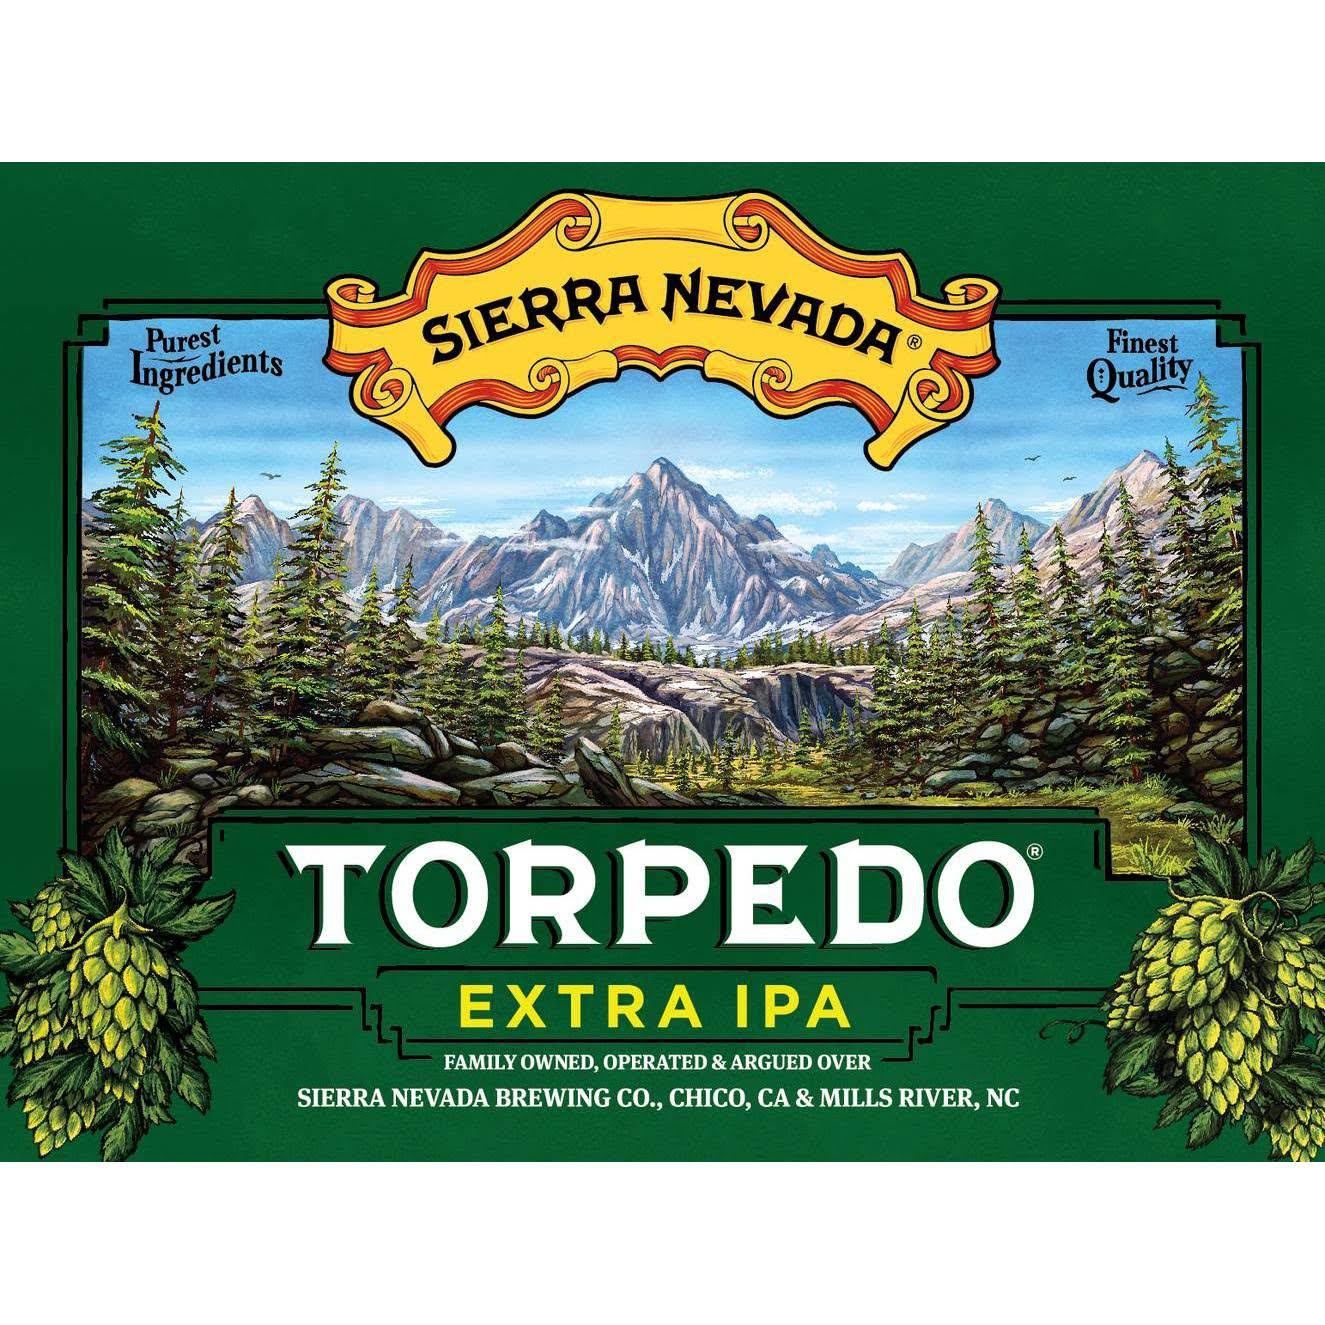 Sierra Nevada Beer, Extra IPA, Torpedo - 12 pack, 12 fl oz bottles